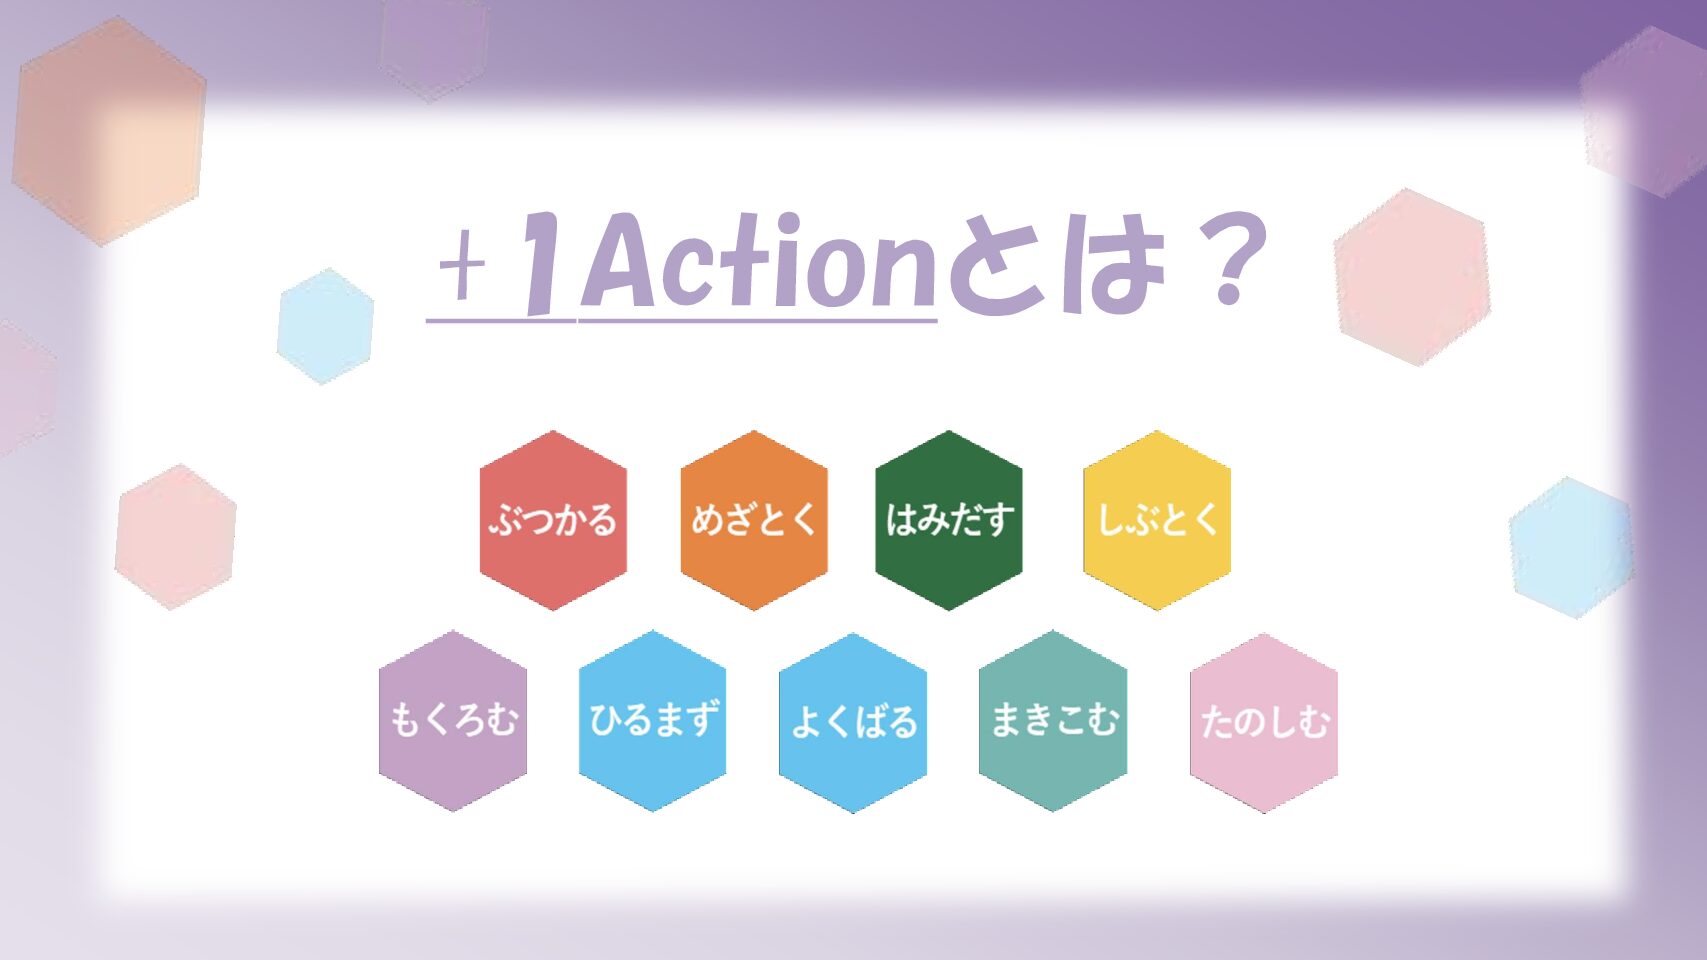 行動指針Action9にある『+1Action』とは・・・？